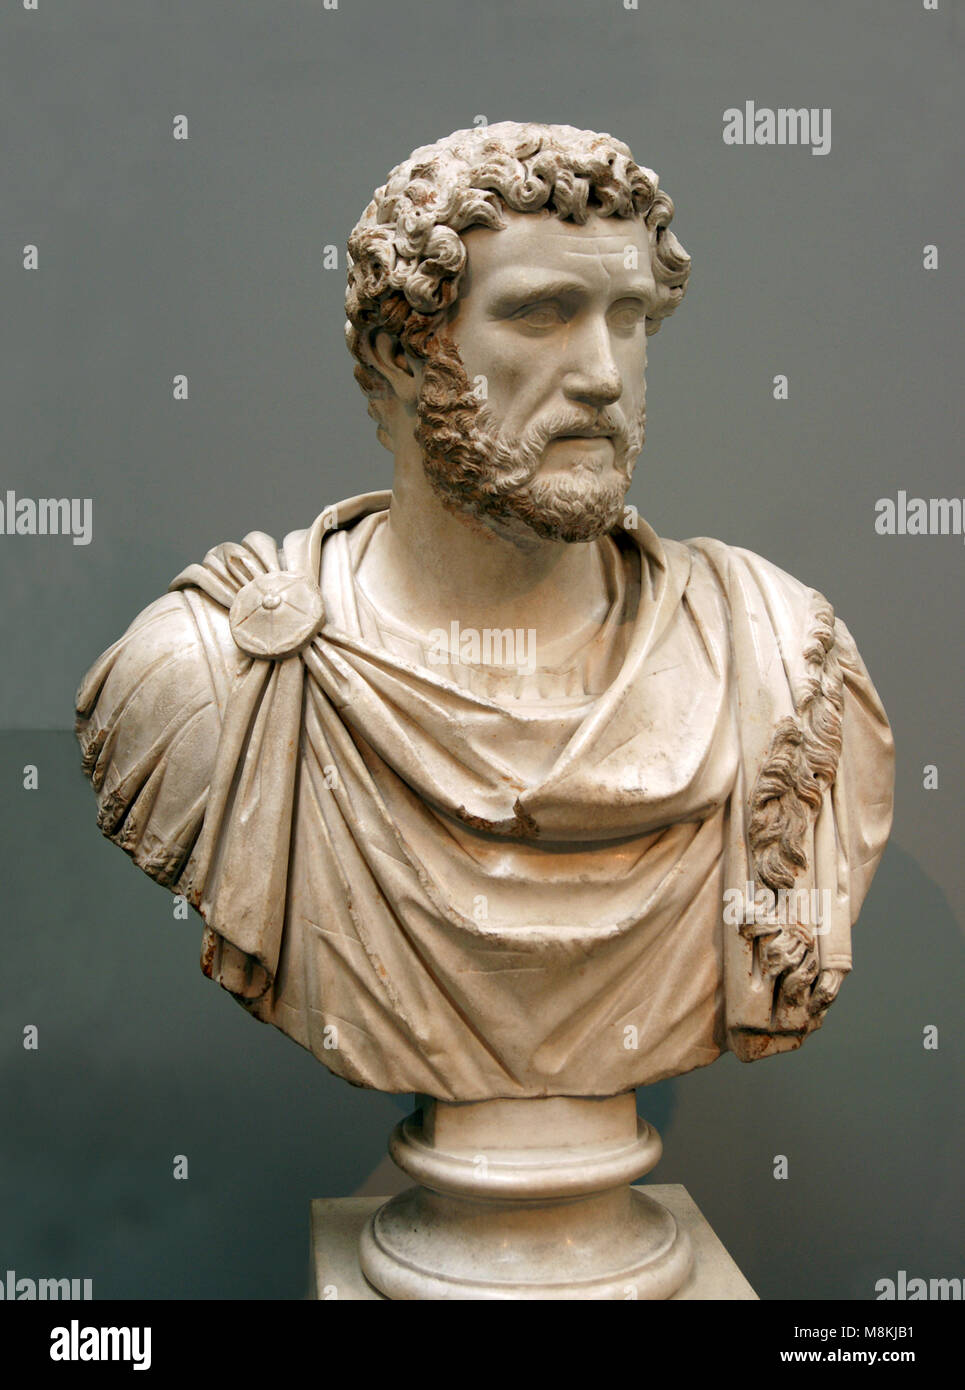 Antoninus Pius (86-161 AD). Römischer Kaiser (138-161 AD). Marmorbüste im militärischen Kleid, ungefähr 140 AD. British Museum, London. Stockfoto